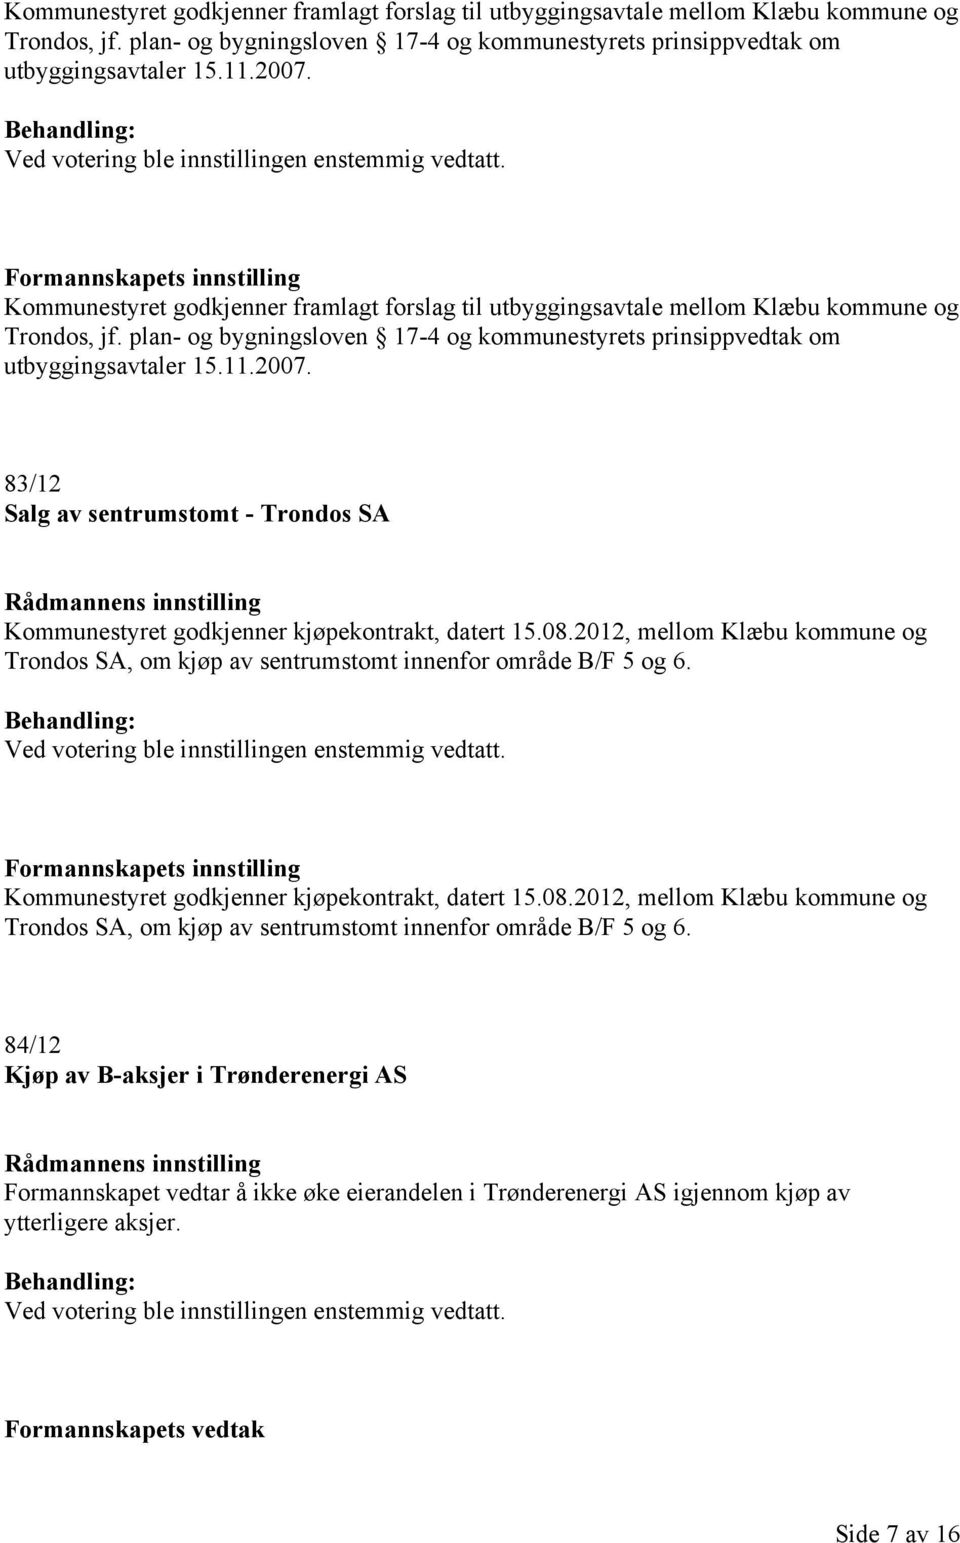 Kommunestyret godkjenner kjøpekontrakt, datert 15.08.2012, mellom Klæbu kommune og Trondos SA, om kjøp av sentrumstomt innenfor område B/F 5 og 6.